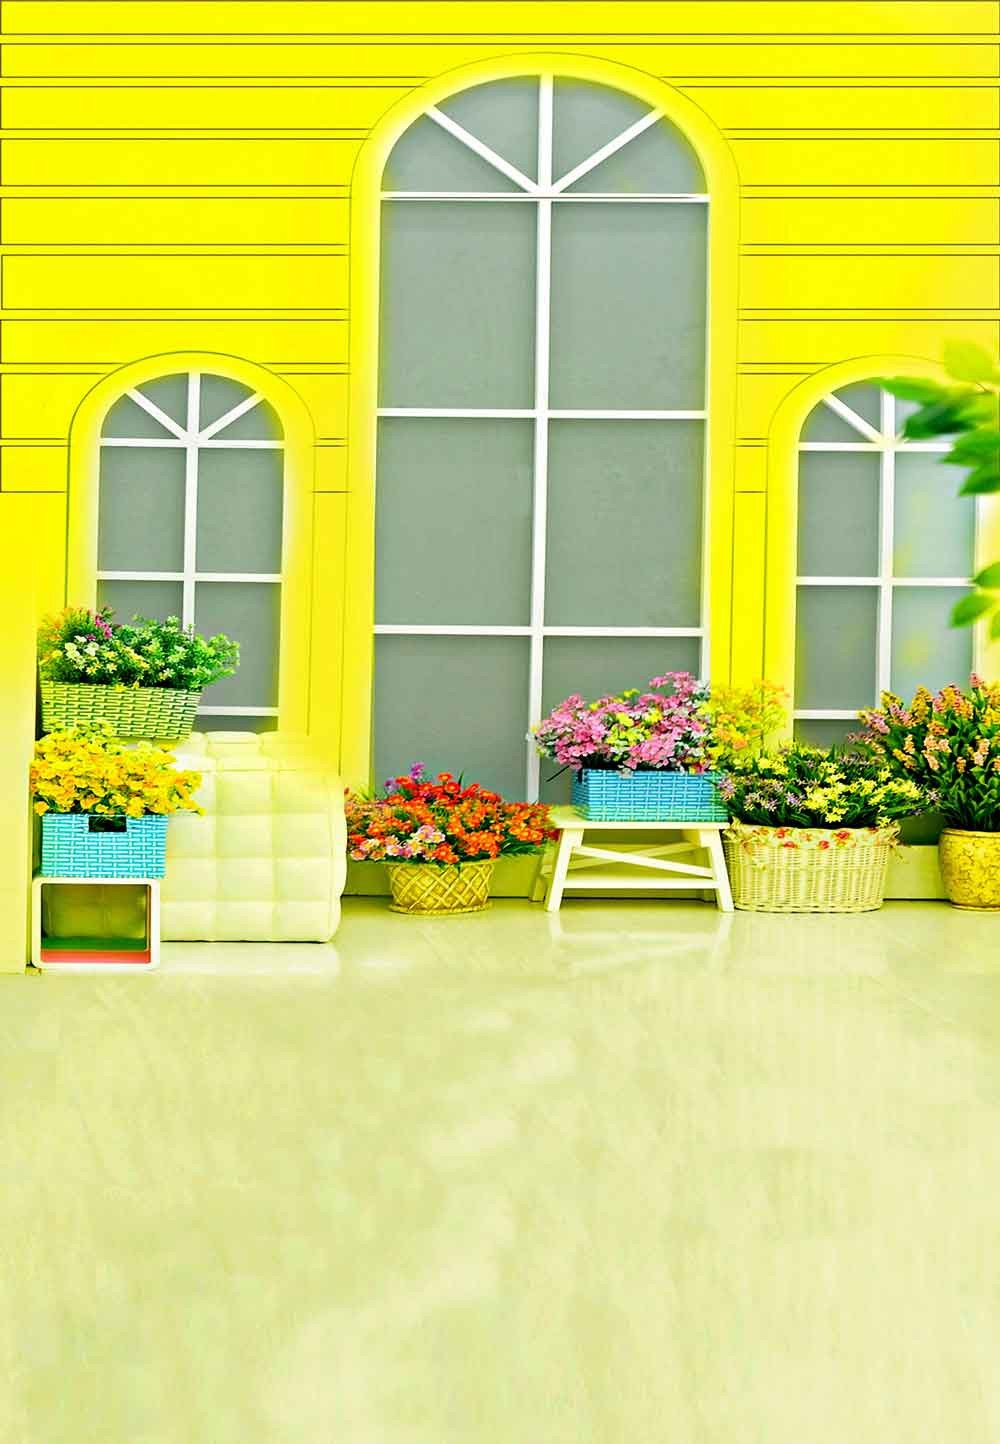 Baby Backdrops Door & Window Backdrops Flower Background N10204-E - iBACKDROP-Baby Kid Backdrops, Cartoon Fairytale Backdrops, Floral Backdrop, Flower Backdrop, Flower Wall Backdrop, win, wind, windo, Yellow Backdrop